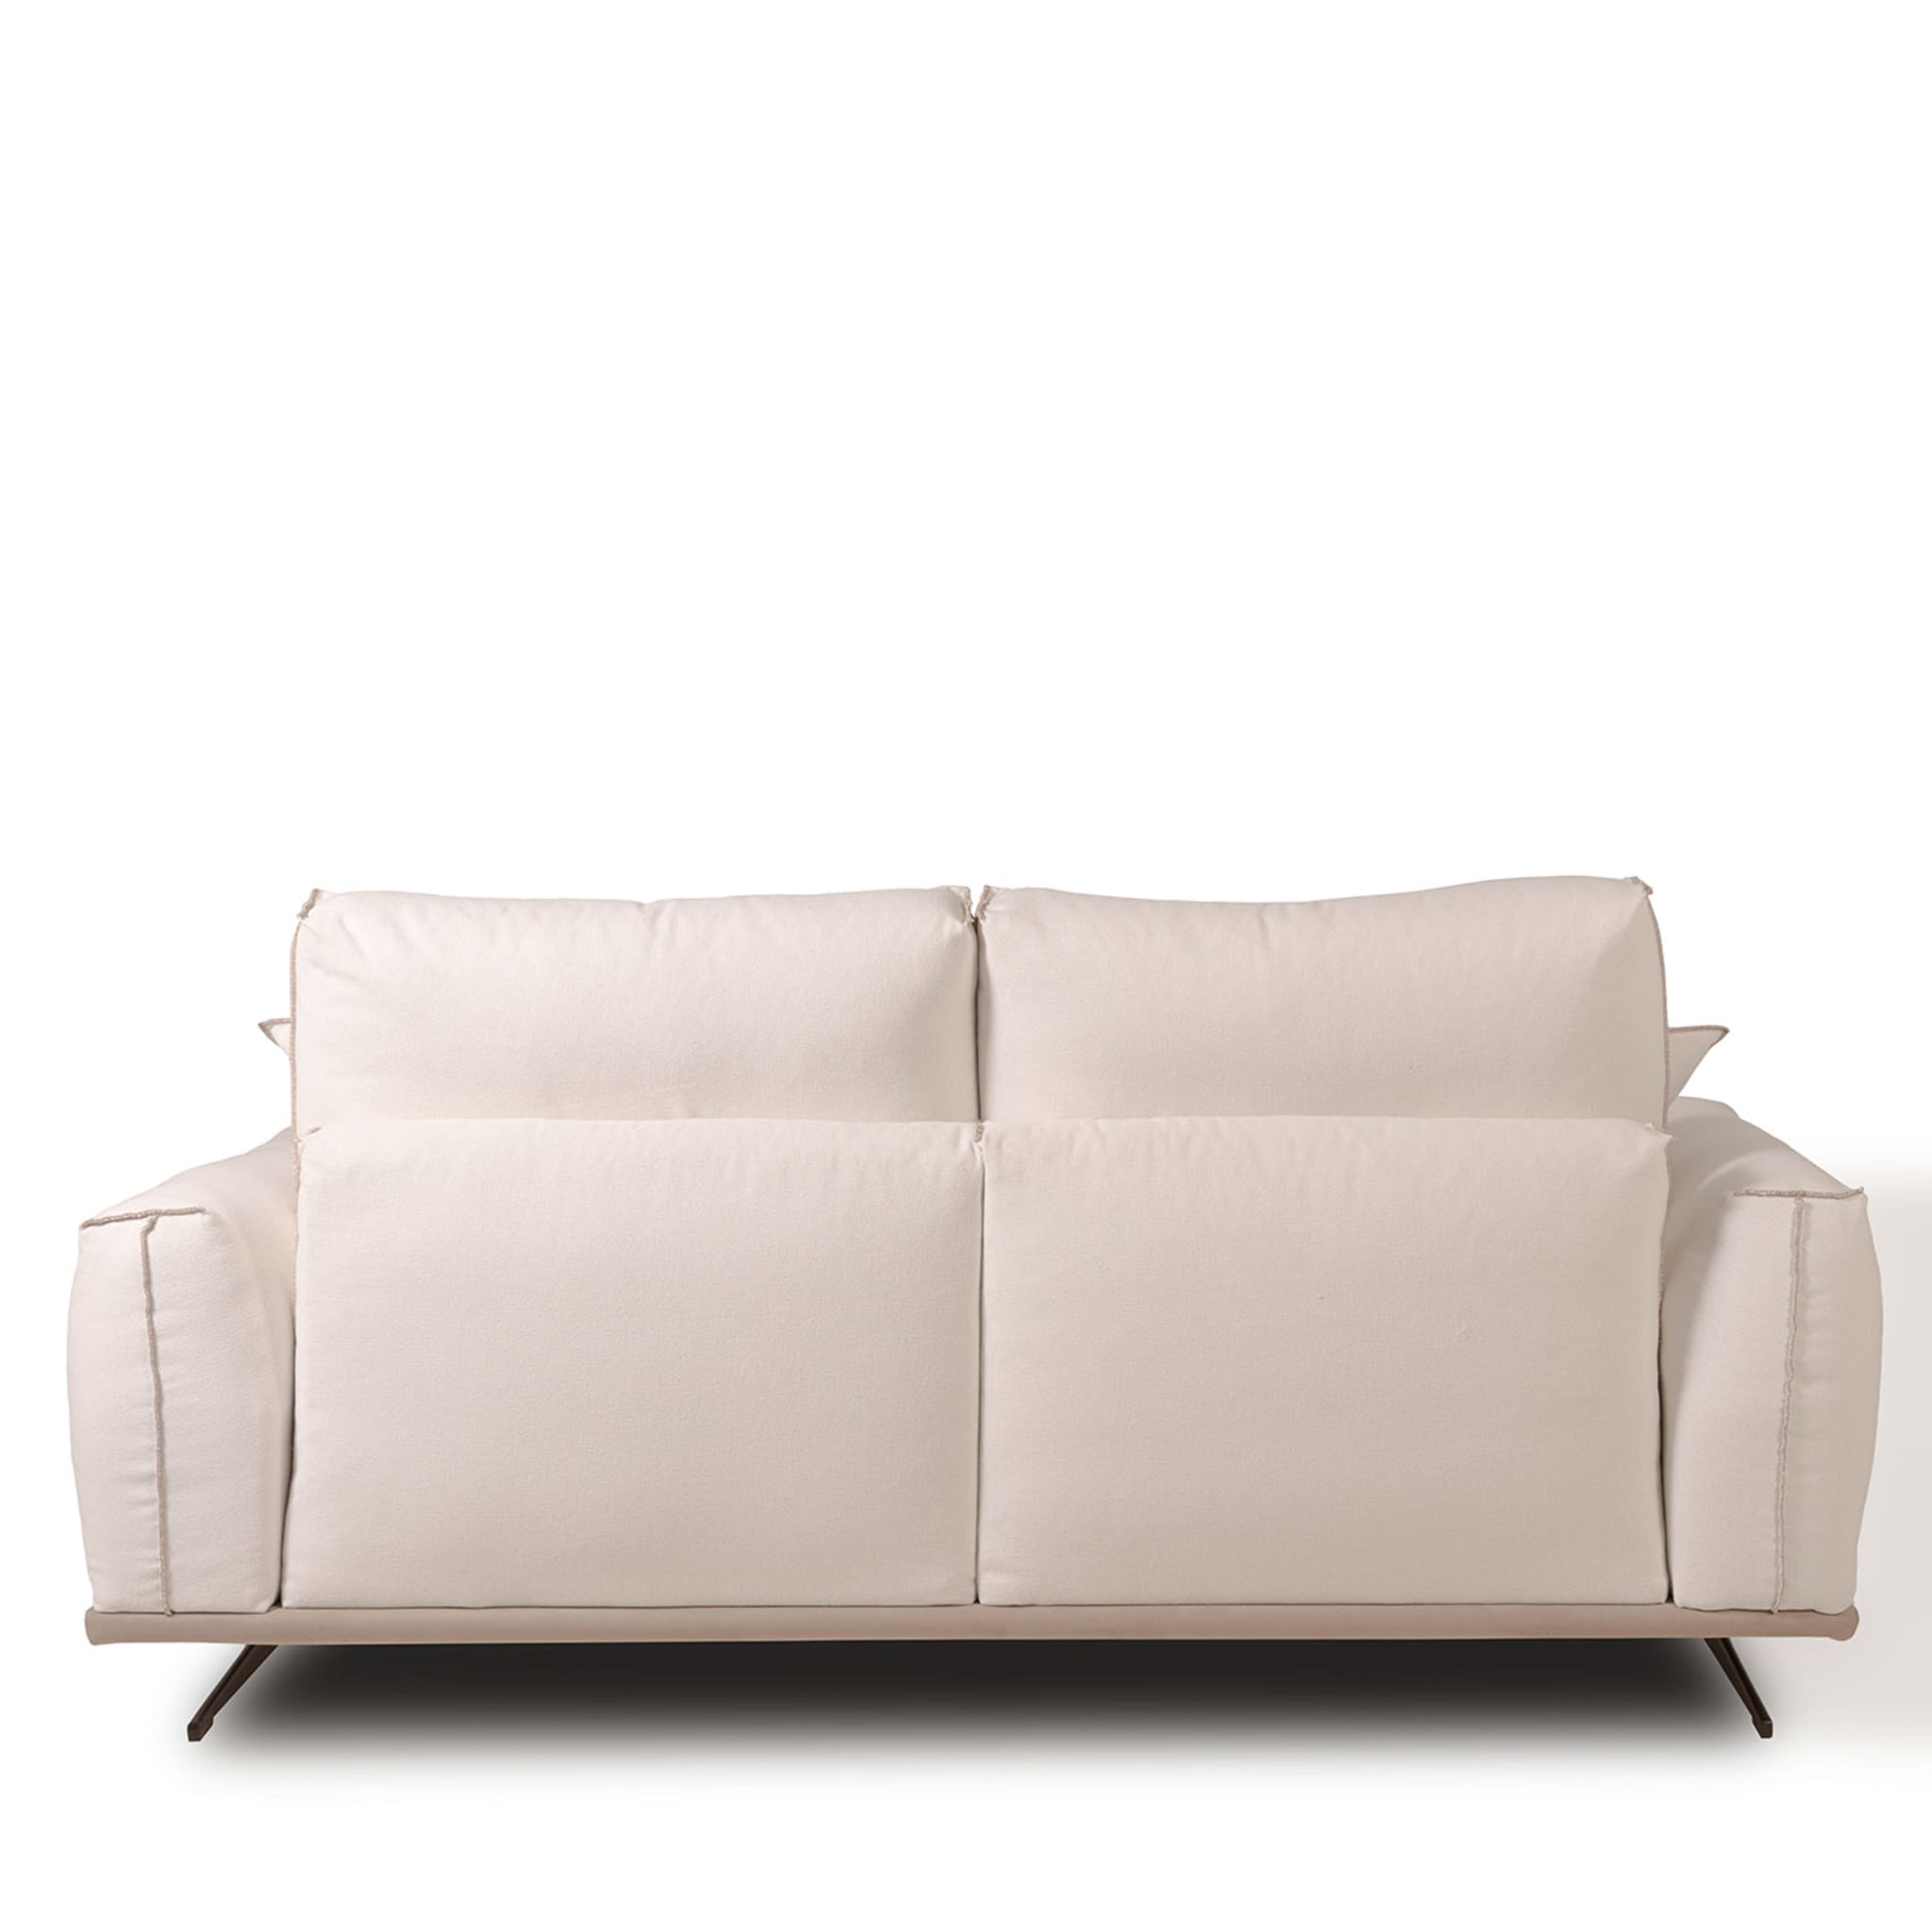 Boboli 2 Seater Sofa by Marco and Giulio Mantellassi - Alternative view 5